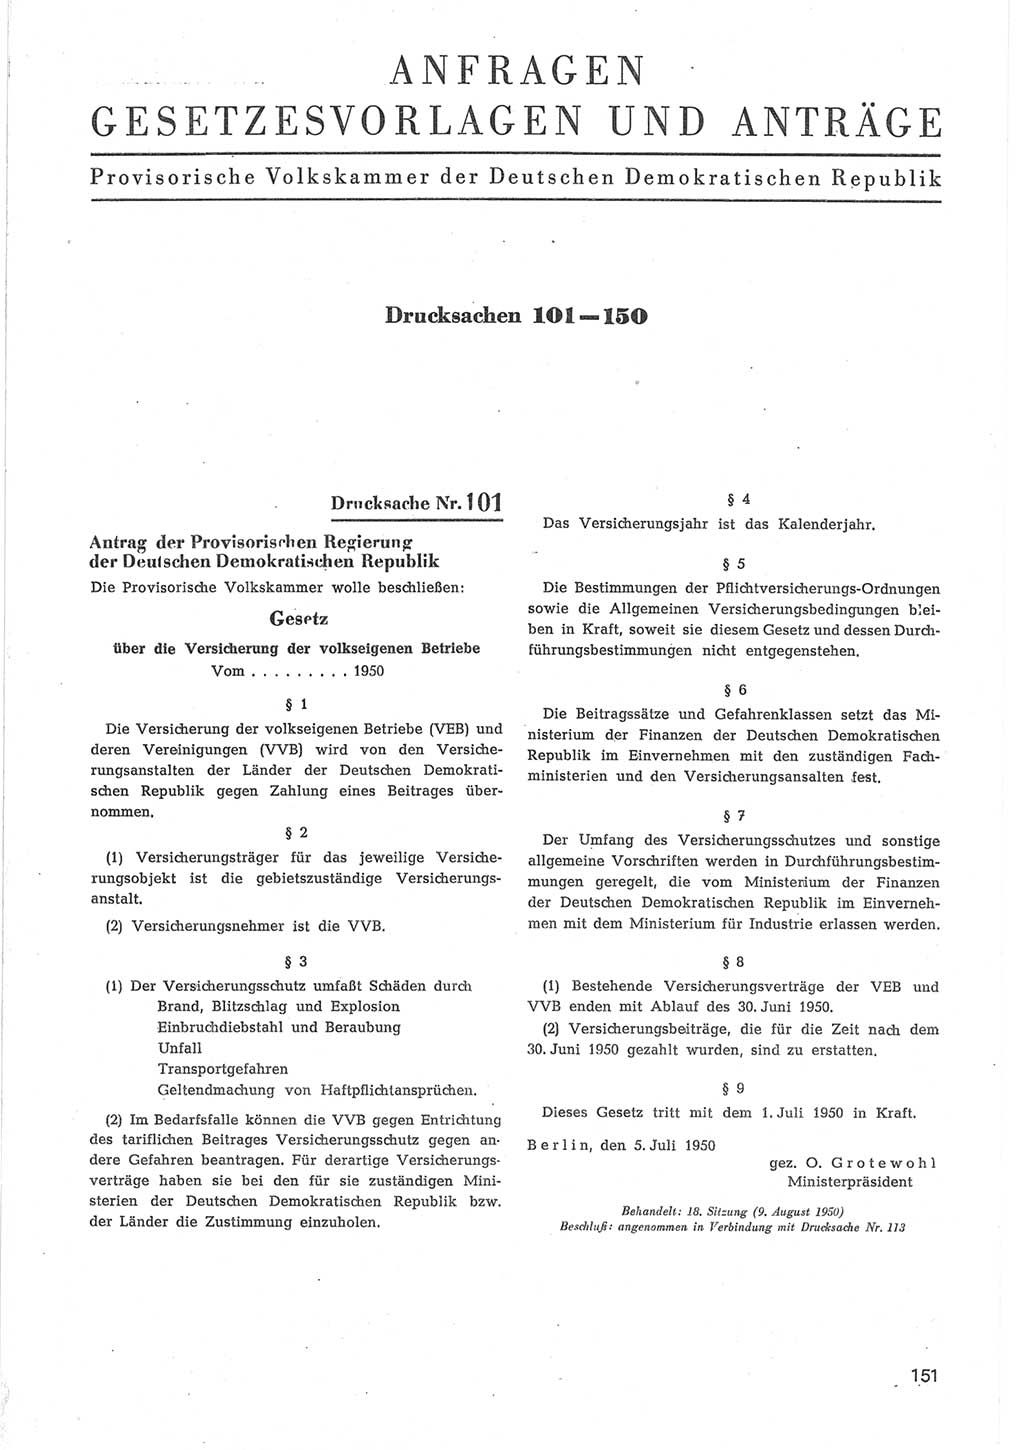 Provisorische Volkskammer (VK) der Deutschen Demokratischen Republik (DDR) 1949-1950, Dokument 753 (Prov. VK DDR 1949-1950, Dok. 753)